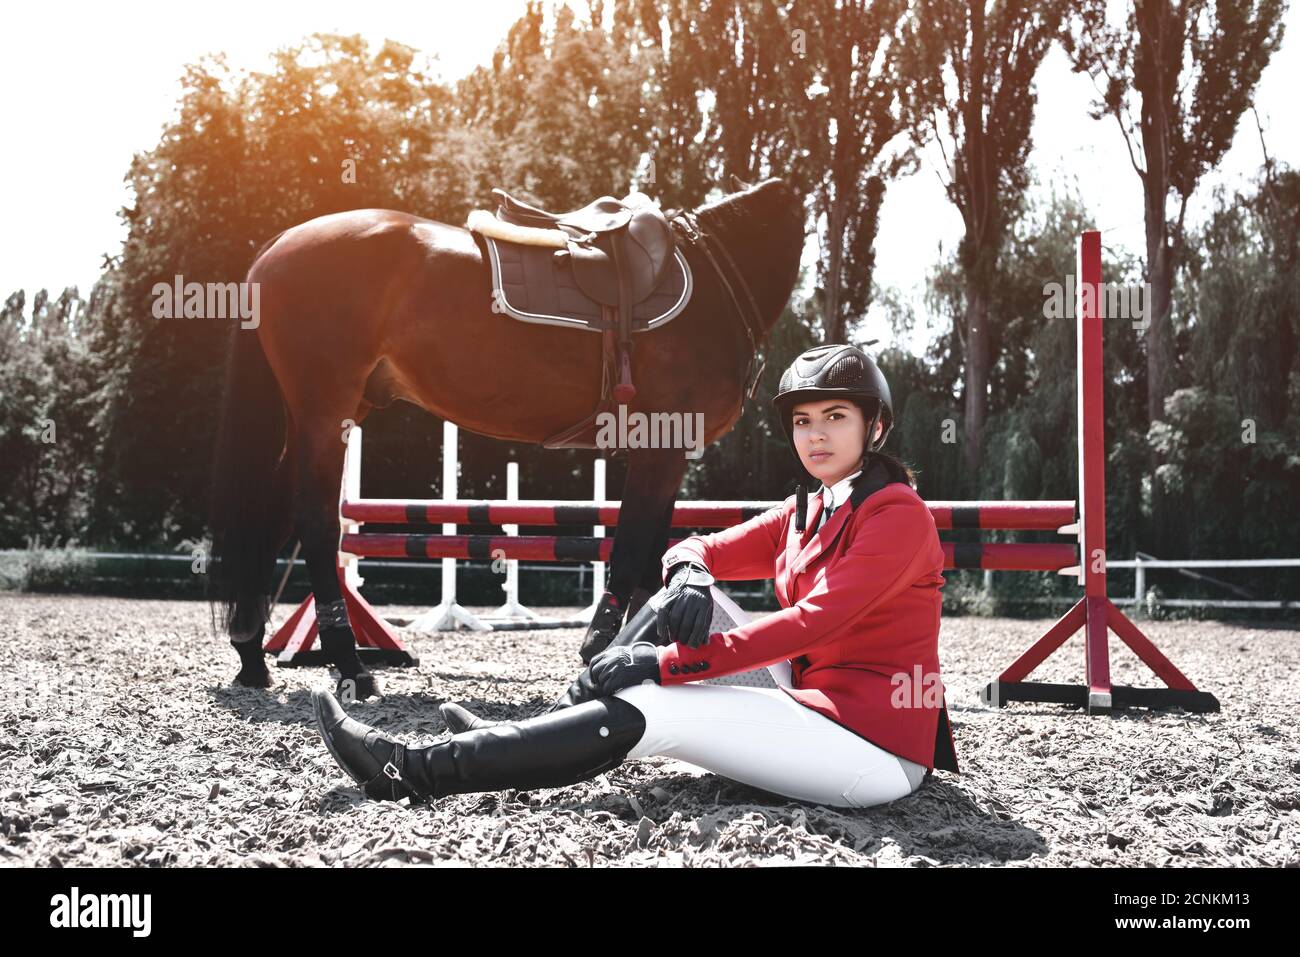 Jinete joven serio Chica y su caballo posando después del entrenamiento. Ama a los animales y pasa su tiempo con alegría en su entorno Foto de stock